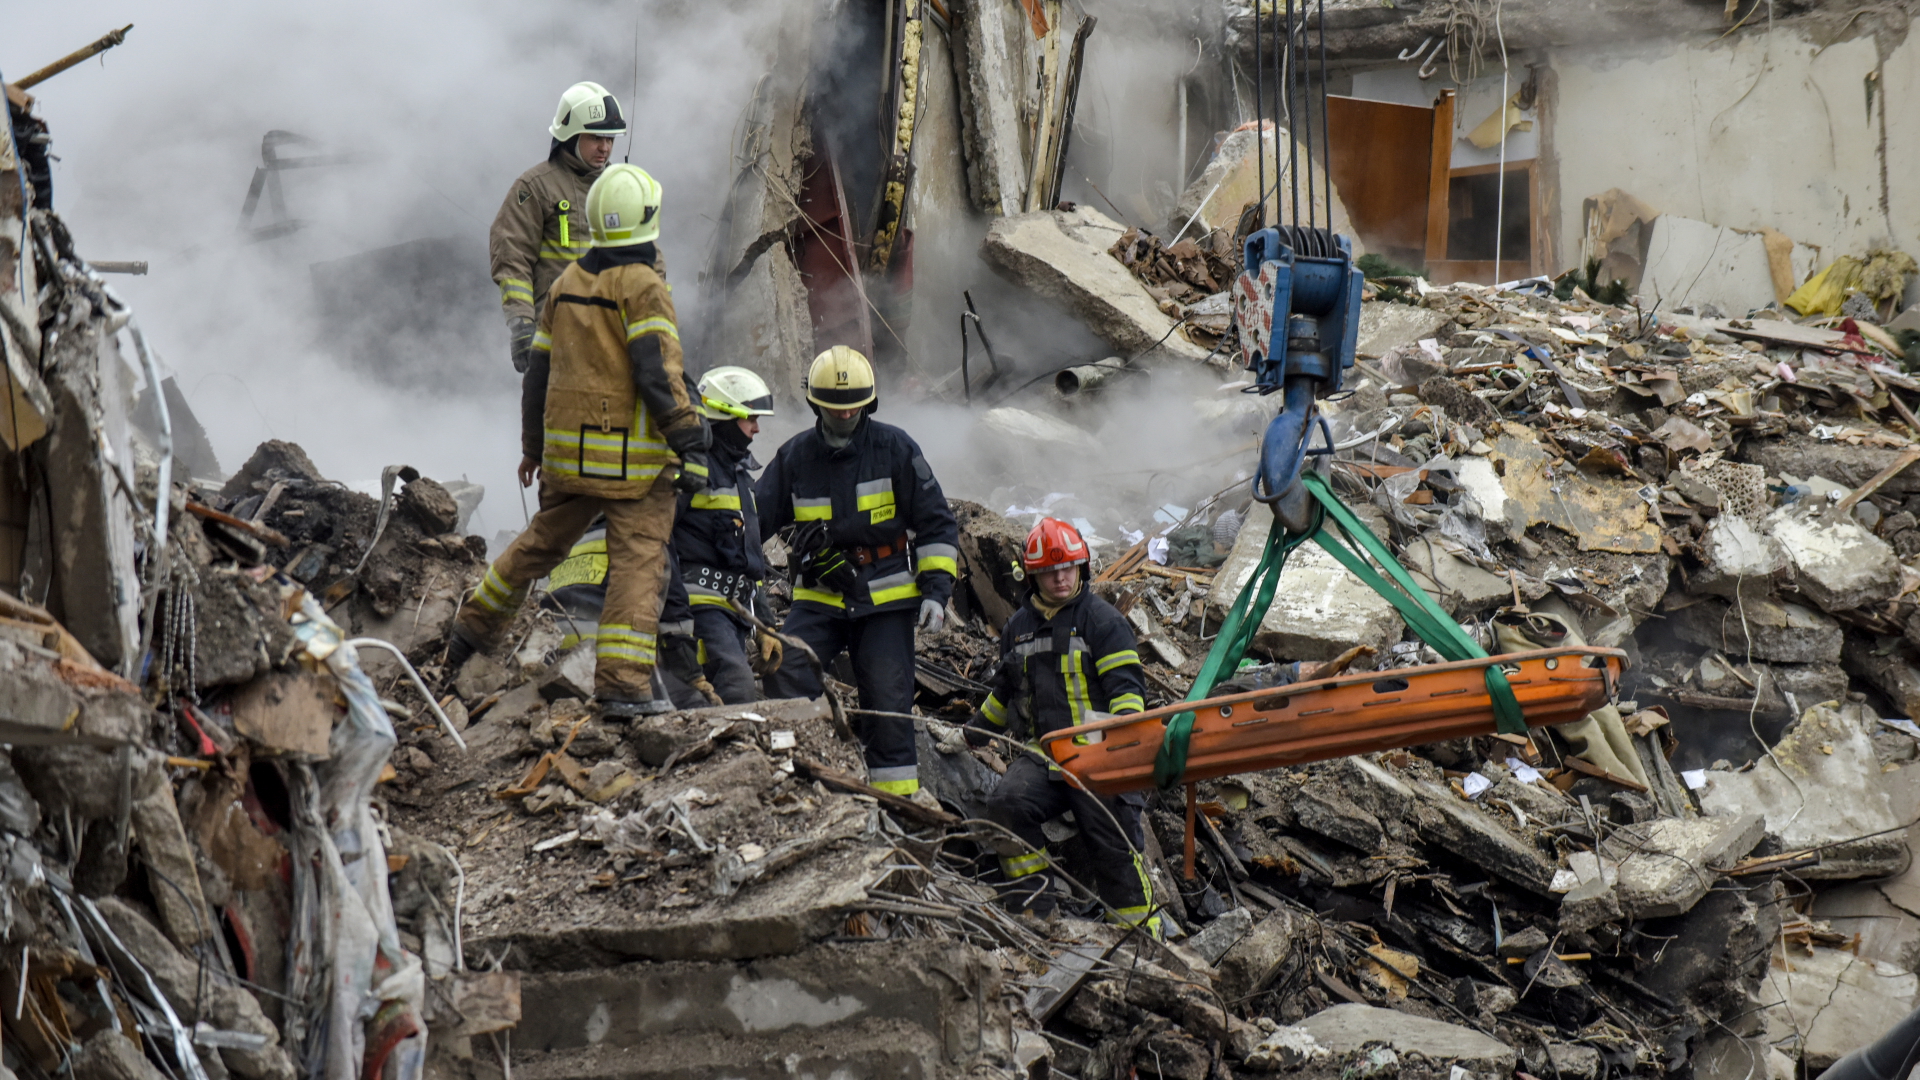 Rettungskräfte bergen Opfer aus den Trümmern eines beschädigten Wohnhauses in Dnipro | EPA